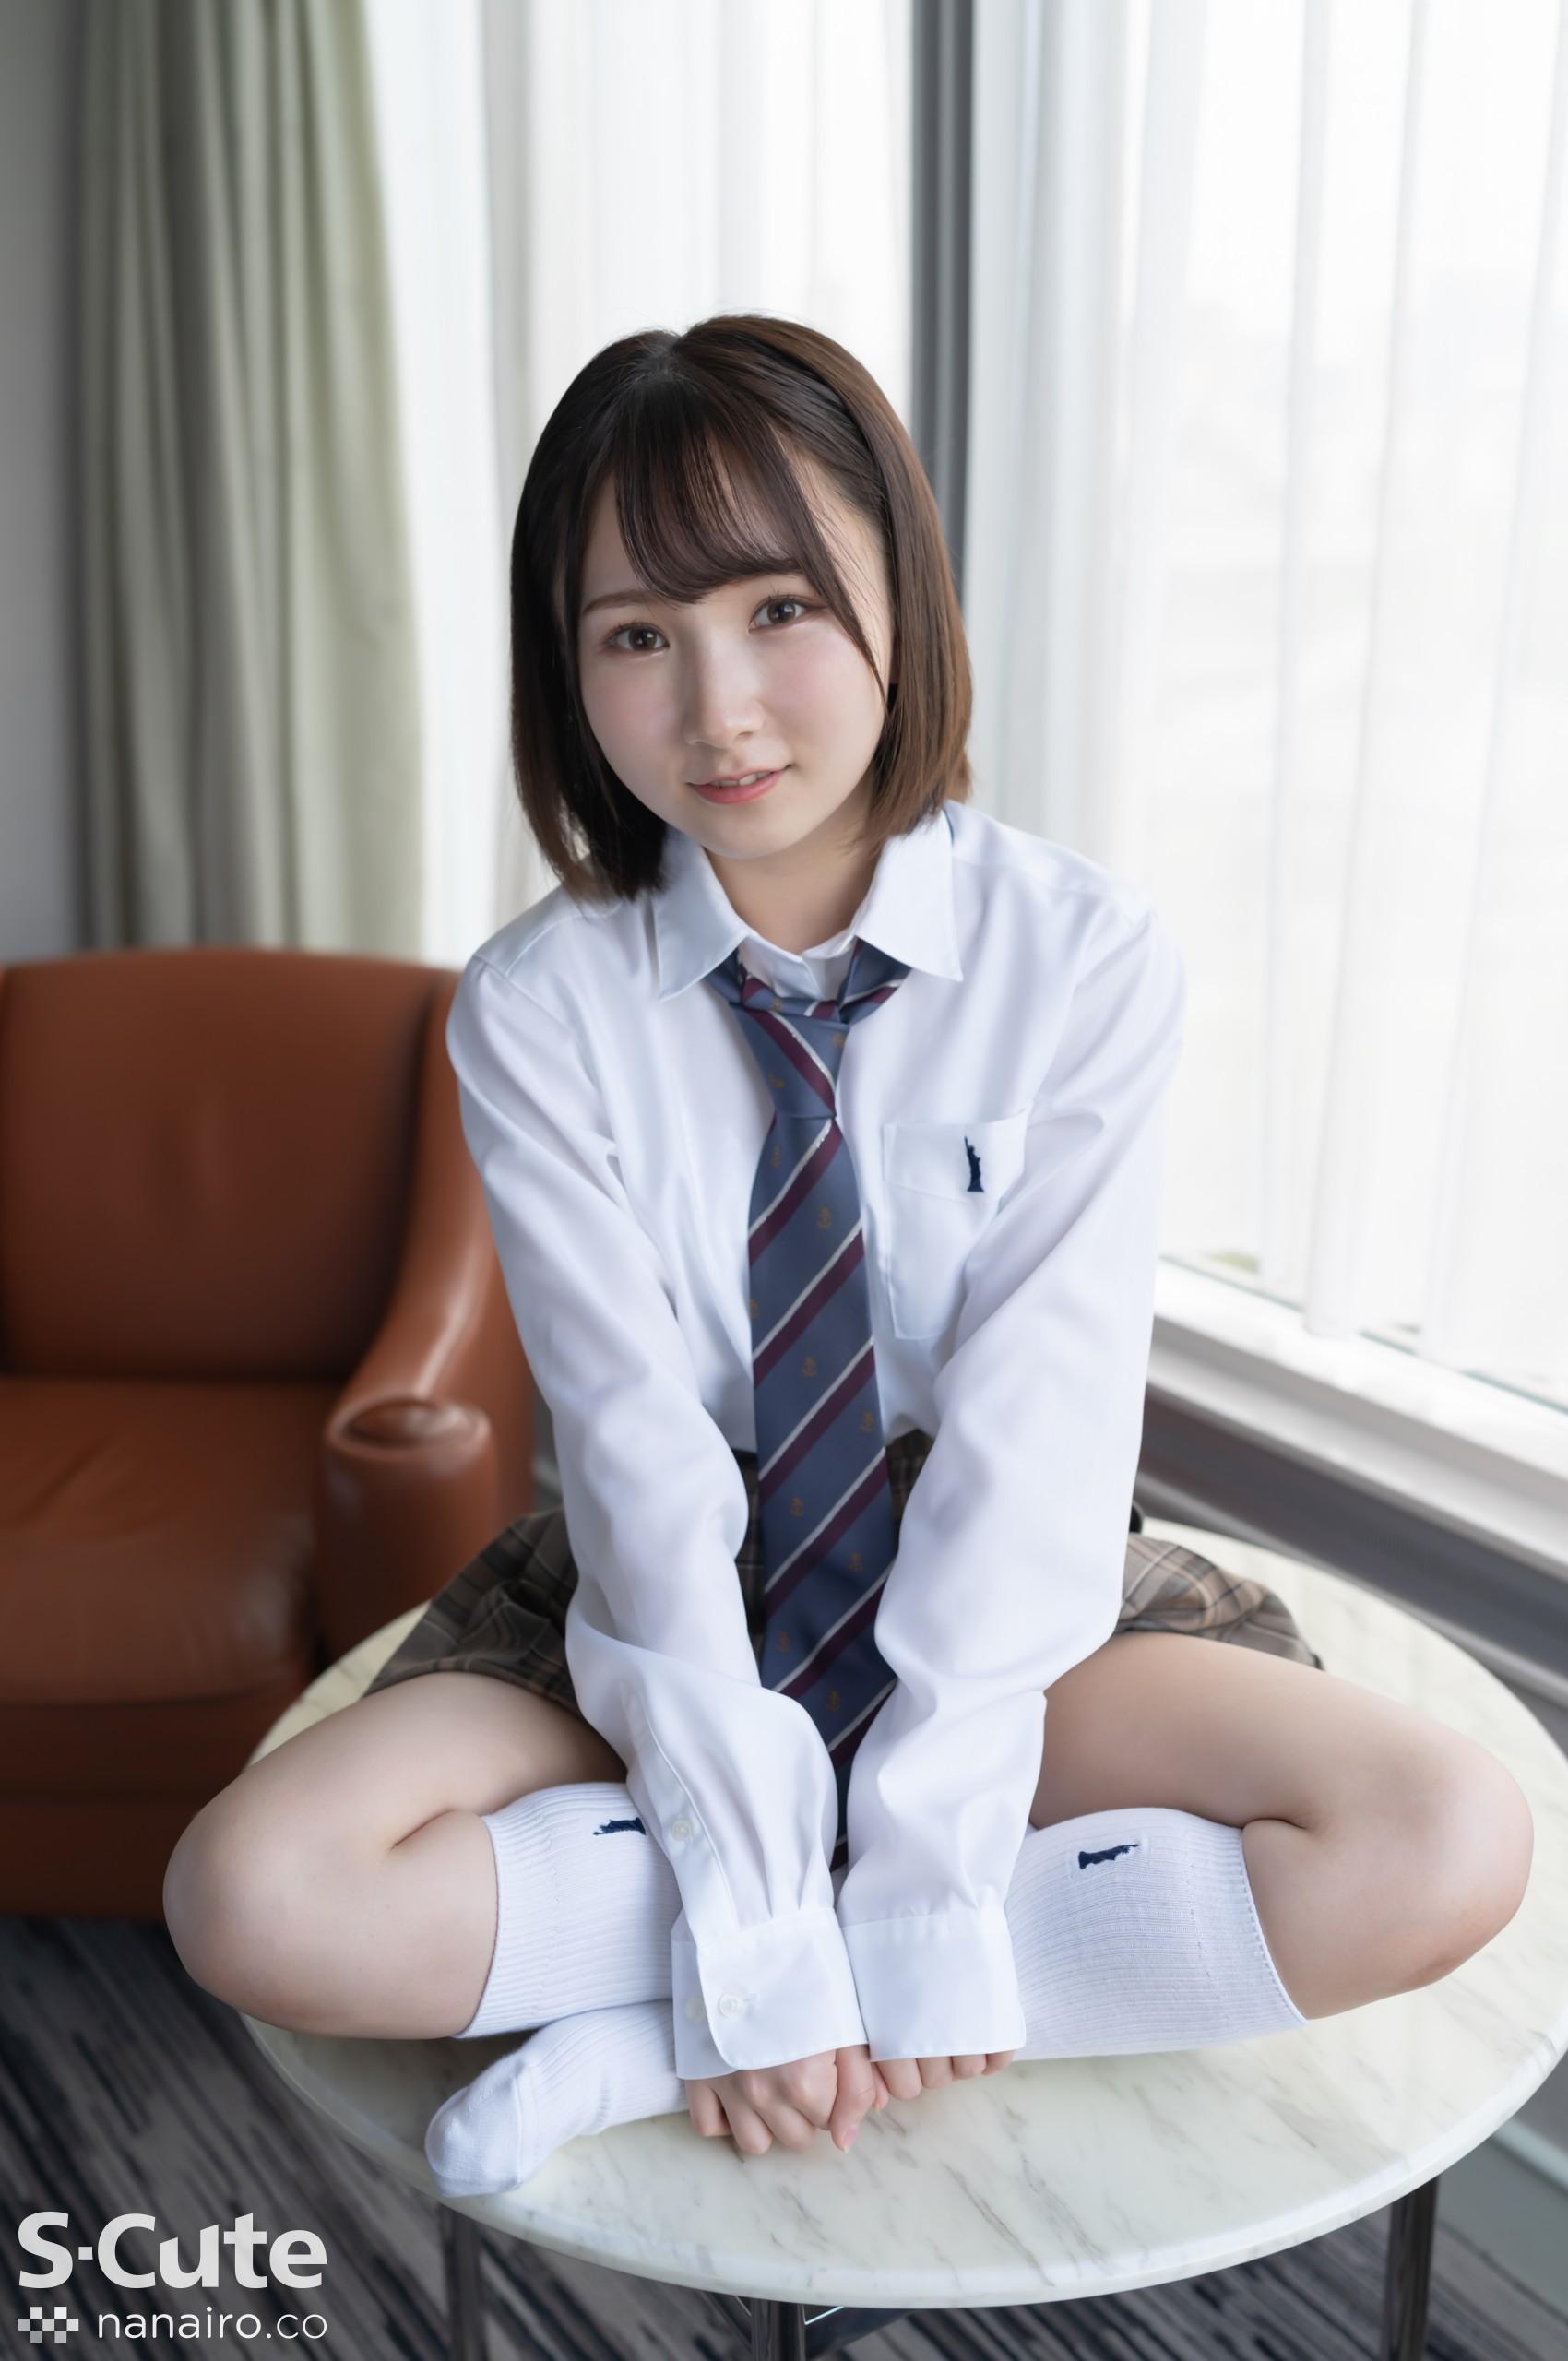 S-Cute 922_kana_02 Adult SEX / Kana a una hermosa chica uniforme que solo se puede ver en servicio activo